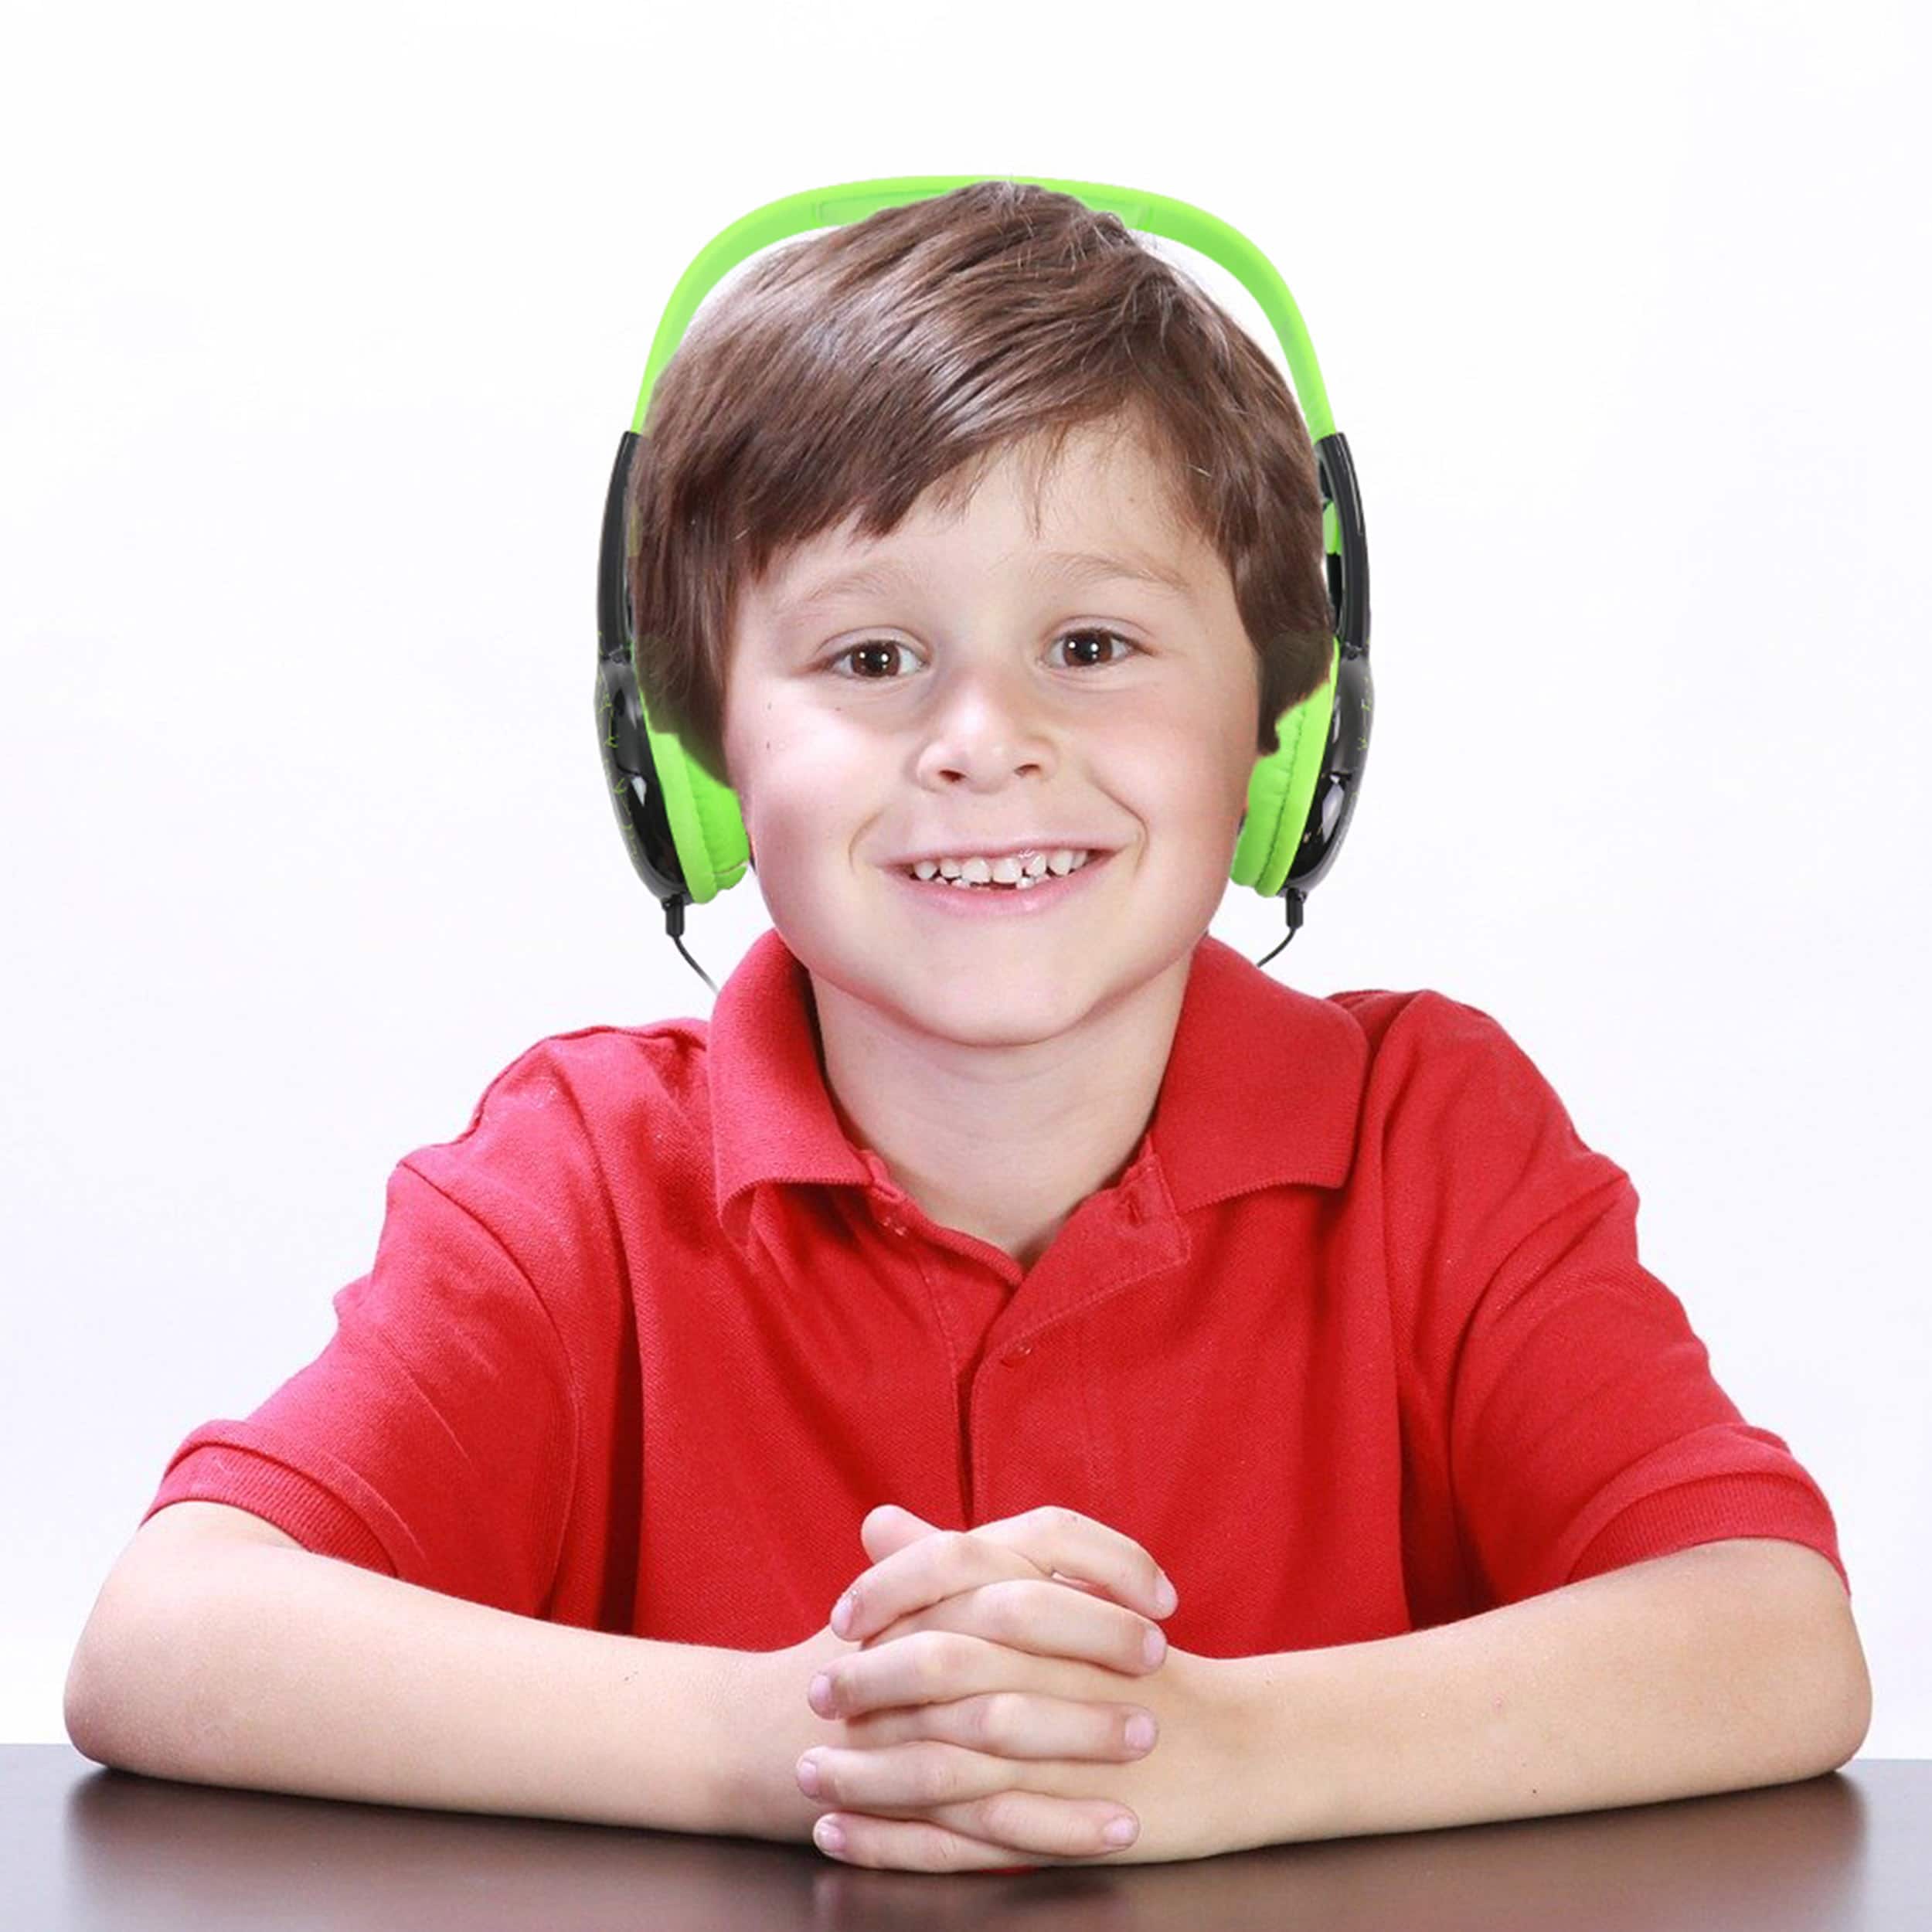 Rise of the Teenage Mutant Ninja Turtles Green Kid-Safe Headphones